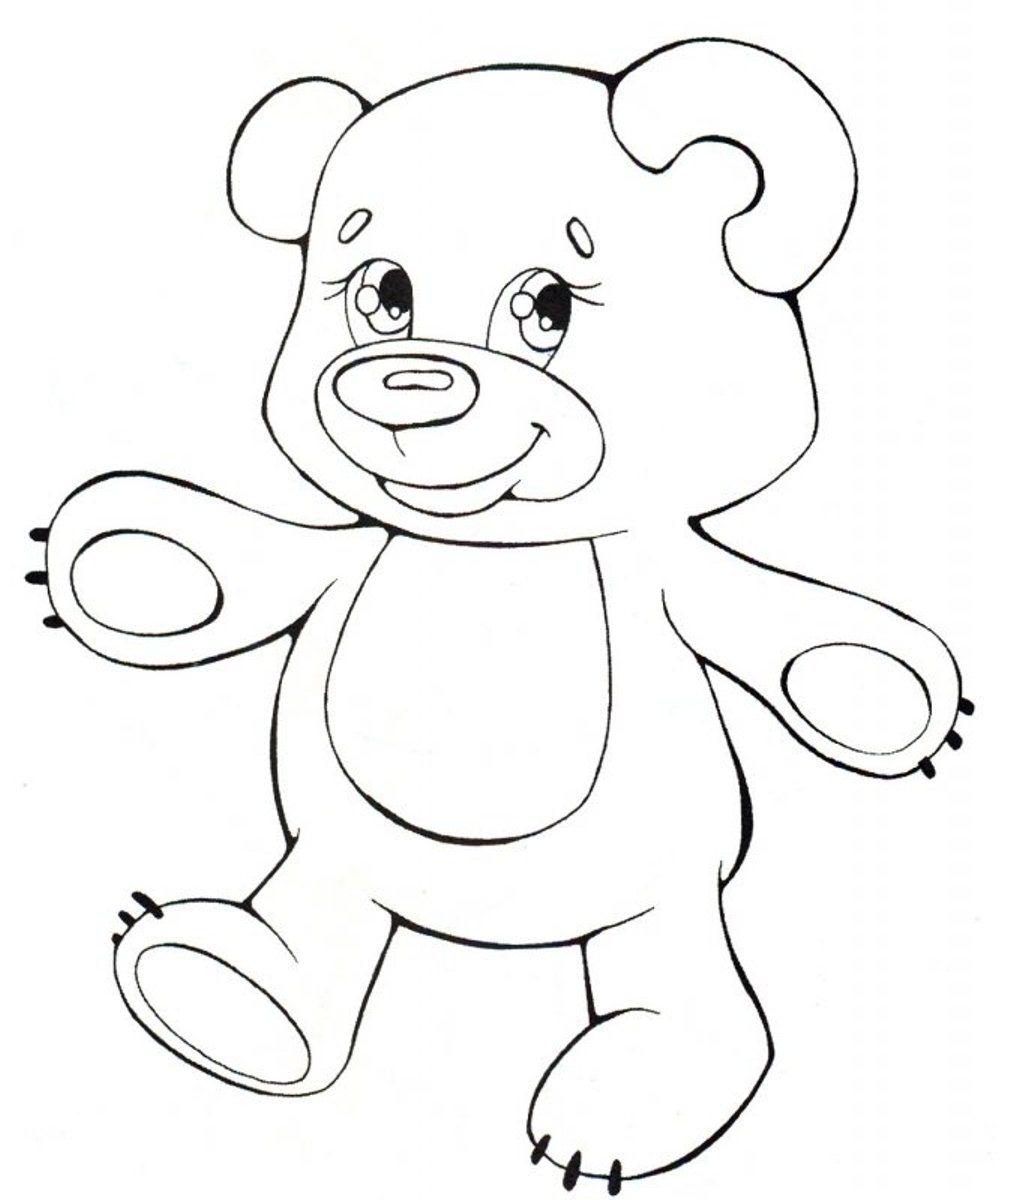 Раскраски с мишками Тедди, милые и красивые раскраски для детей с медвежатами  Мишка Тедди с лапами в разные стороны